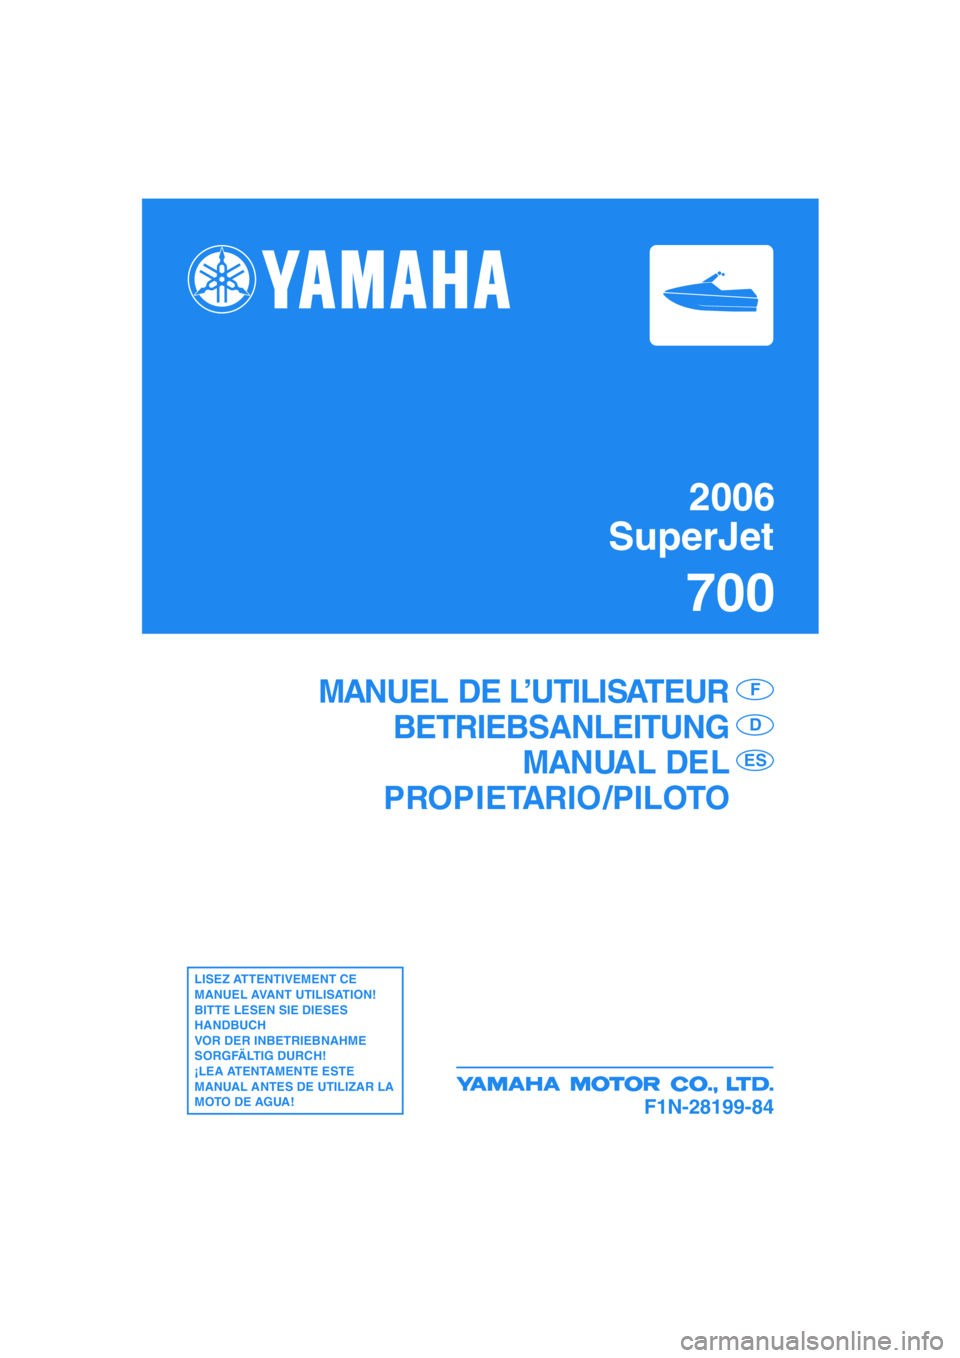 YAMAHA SUPERJET 2006  Notices Demploi (in French) 2006
SuperJet
700
F1N-28199-84
MANUEL DE L’UTILISATEUR
BETRIEBSANLEITUNG
MANUAL DEL
PROPIETARIO /PILOTOF
D
ES
LISEZ ATTENTIVEMENT CE 
MANUEL AVANT UTILISATION!
BITTE LESEN SIE DIESES 
HANDBUCH 
VOR 